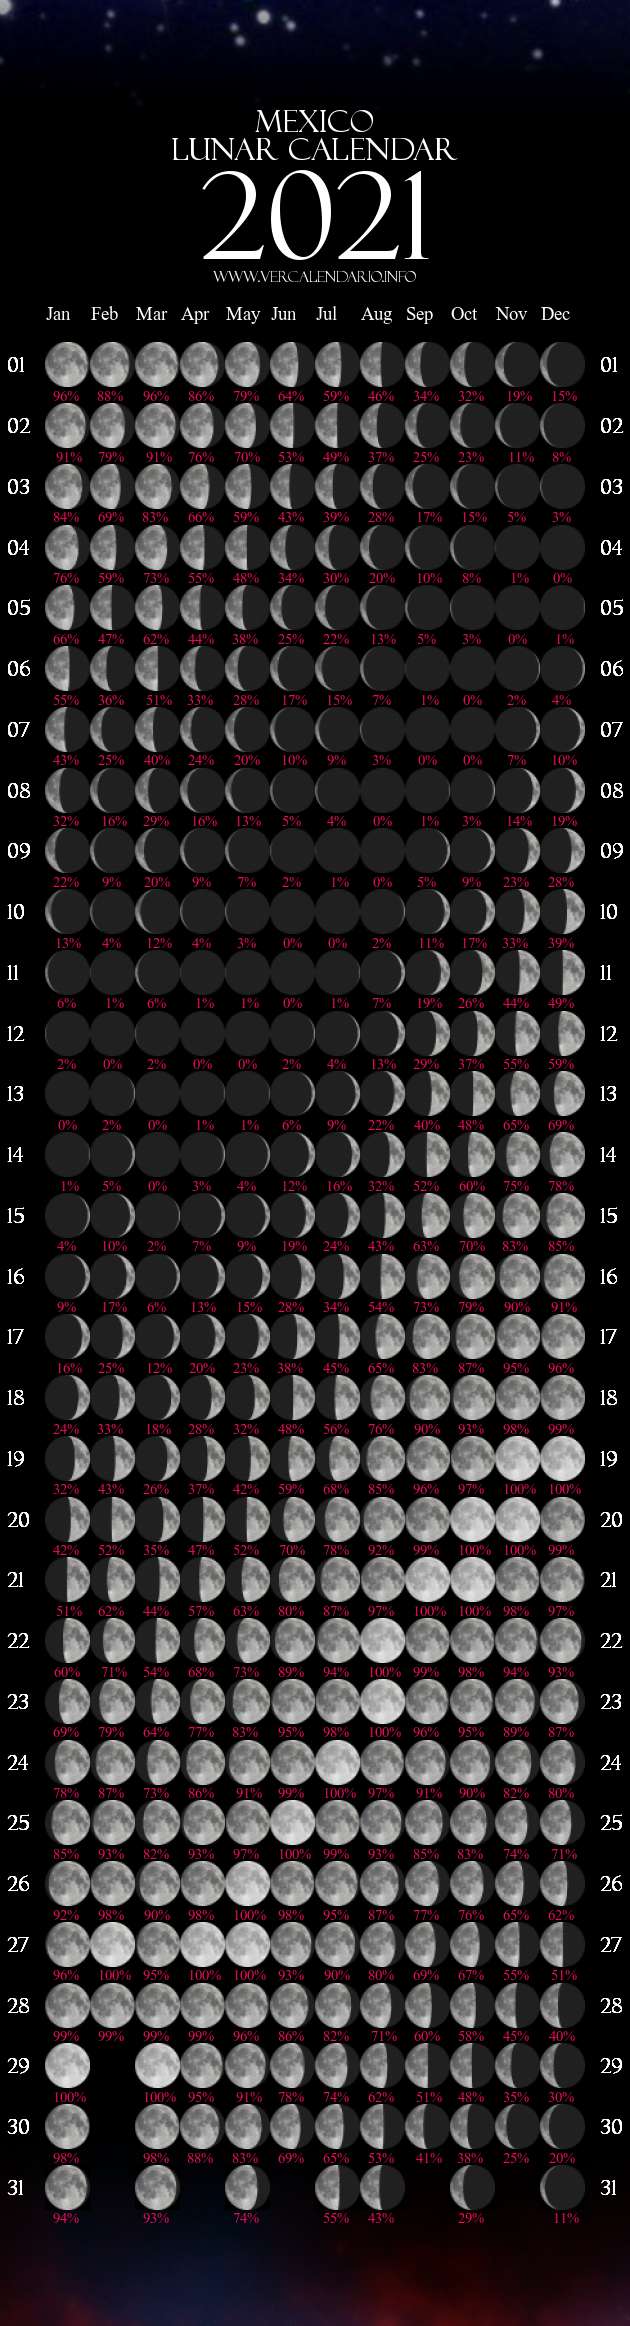 Lunar Calendar 2021 (Mexico)